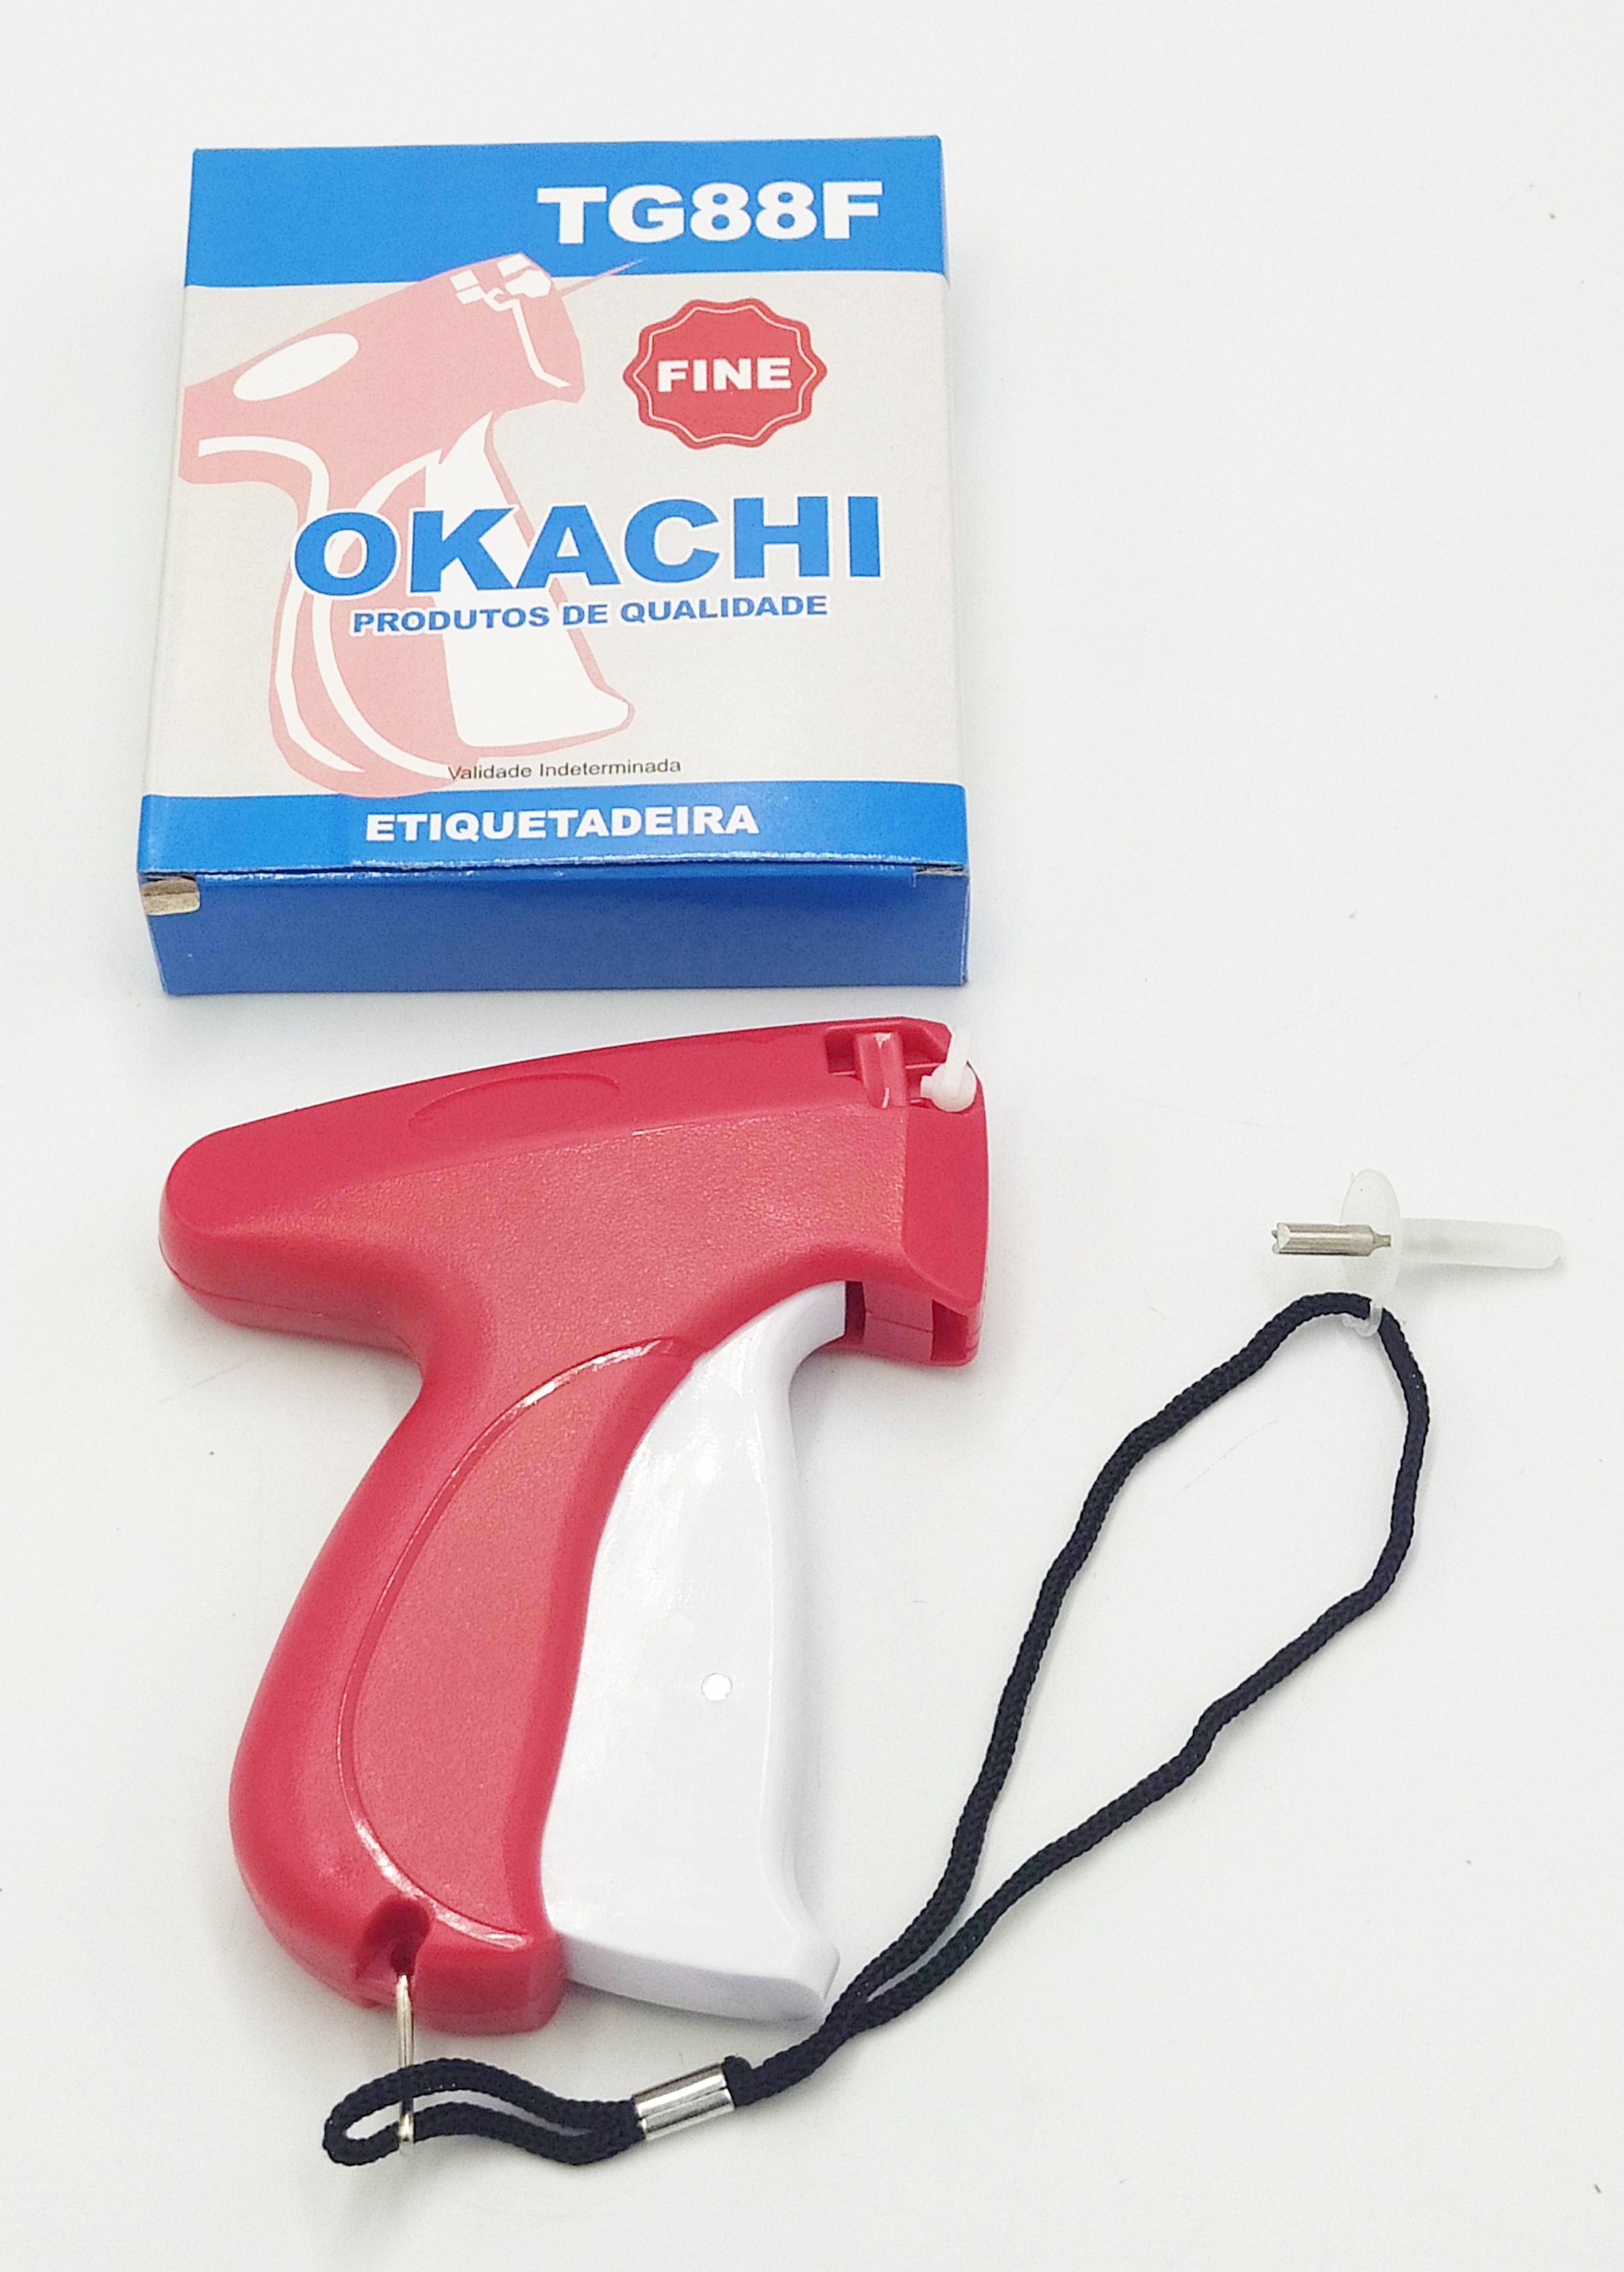 Aplicador Manual de Tag Pin TG88F - Okachi